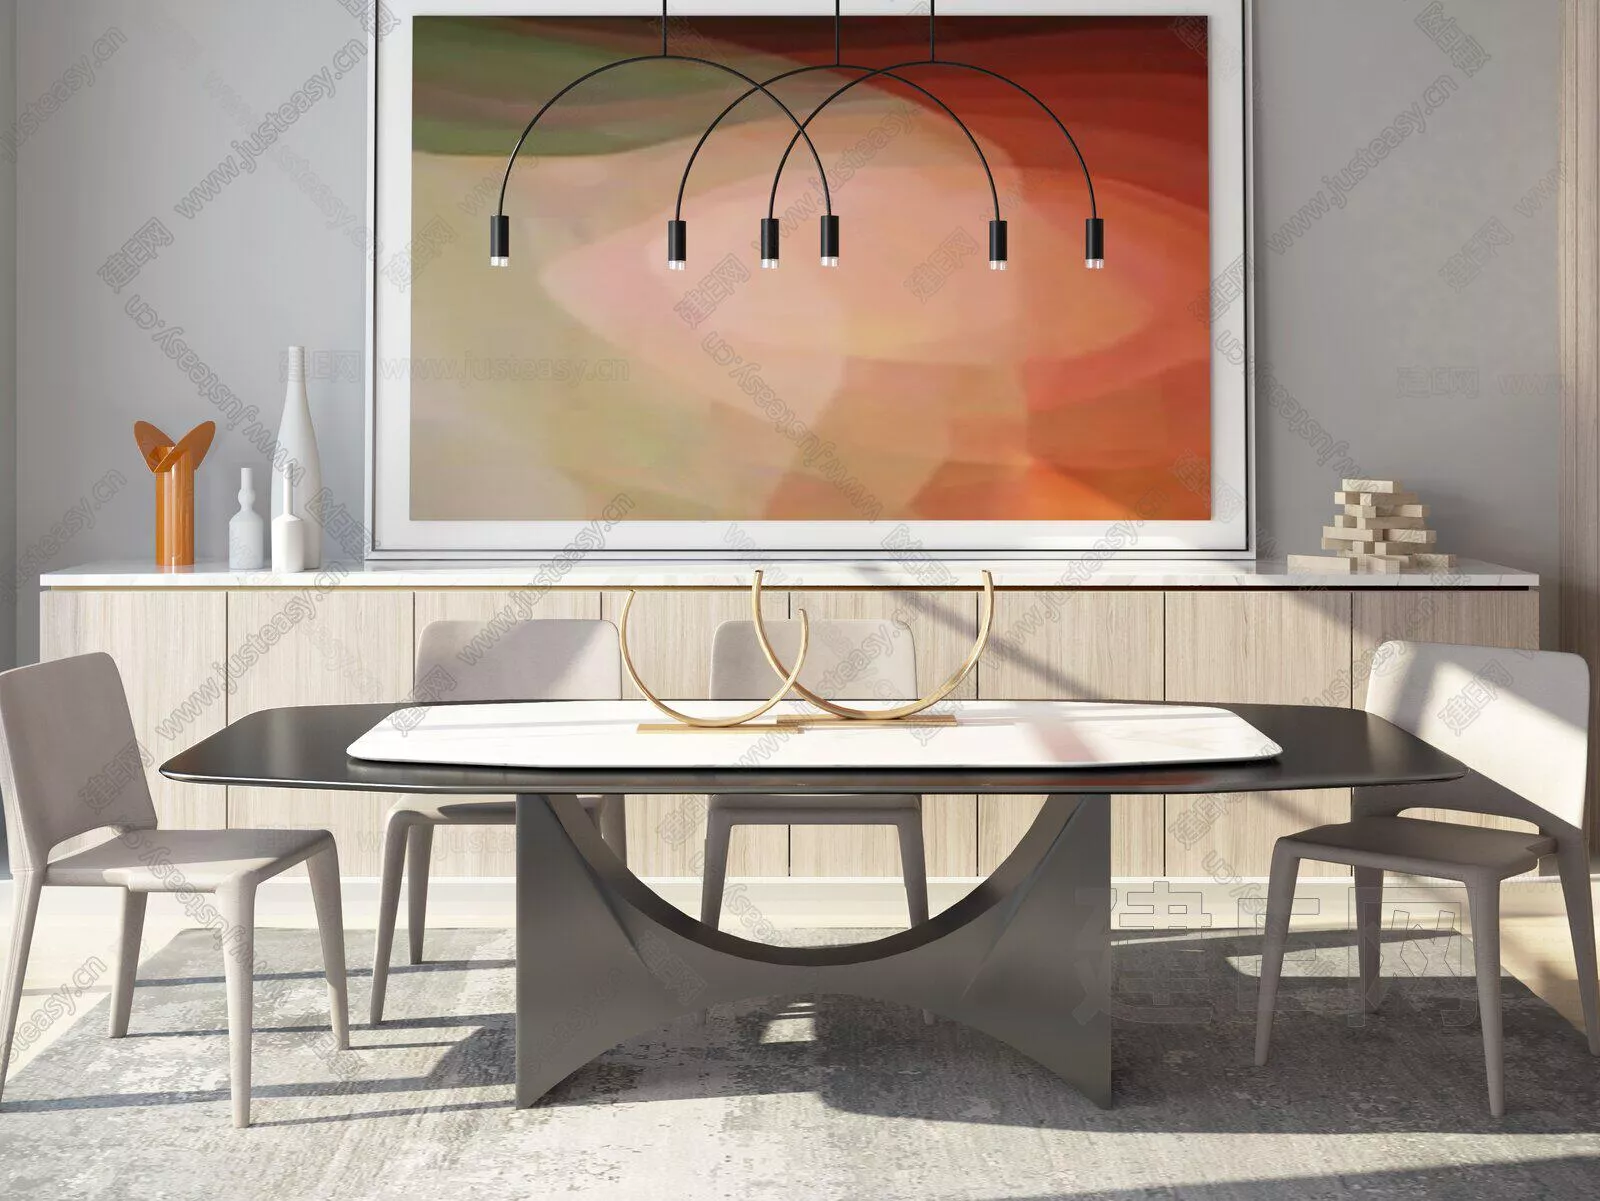 MODERN DINING TABLE SET - SKETCHUP 3D MODEL - ENSCAPE - 111365426